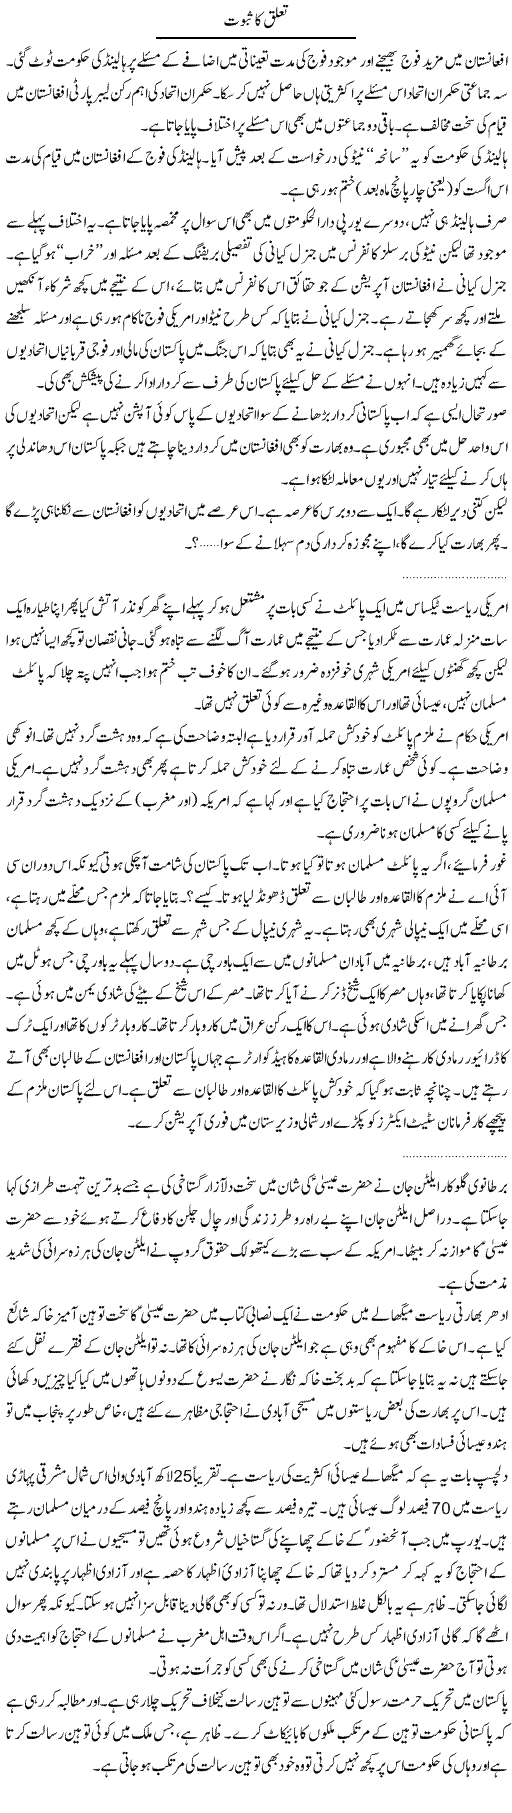 Taluq ka saboot Express Column Abdullah Tariq 23 Feb 2010